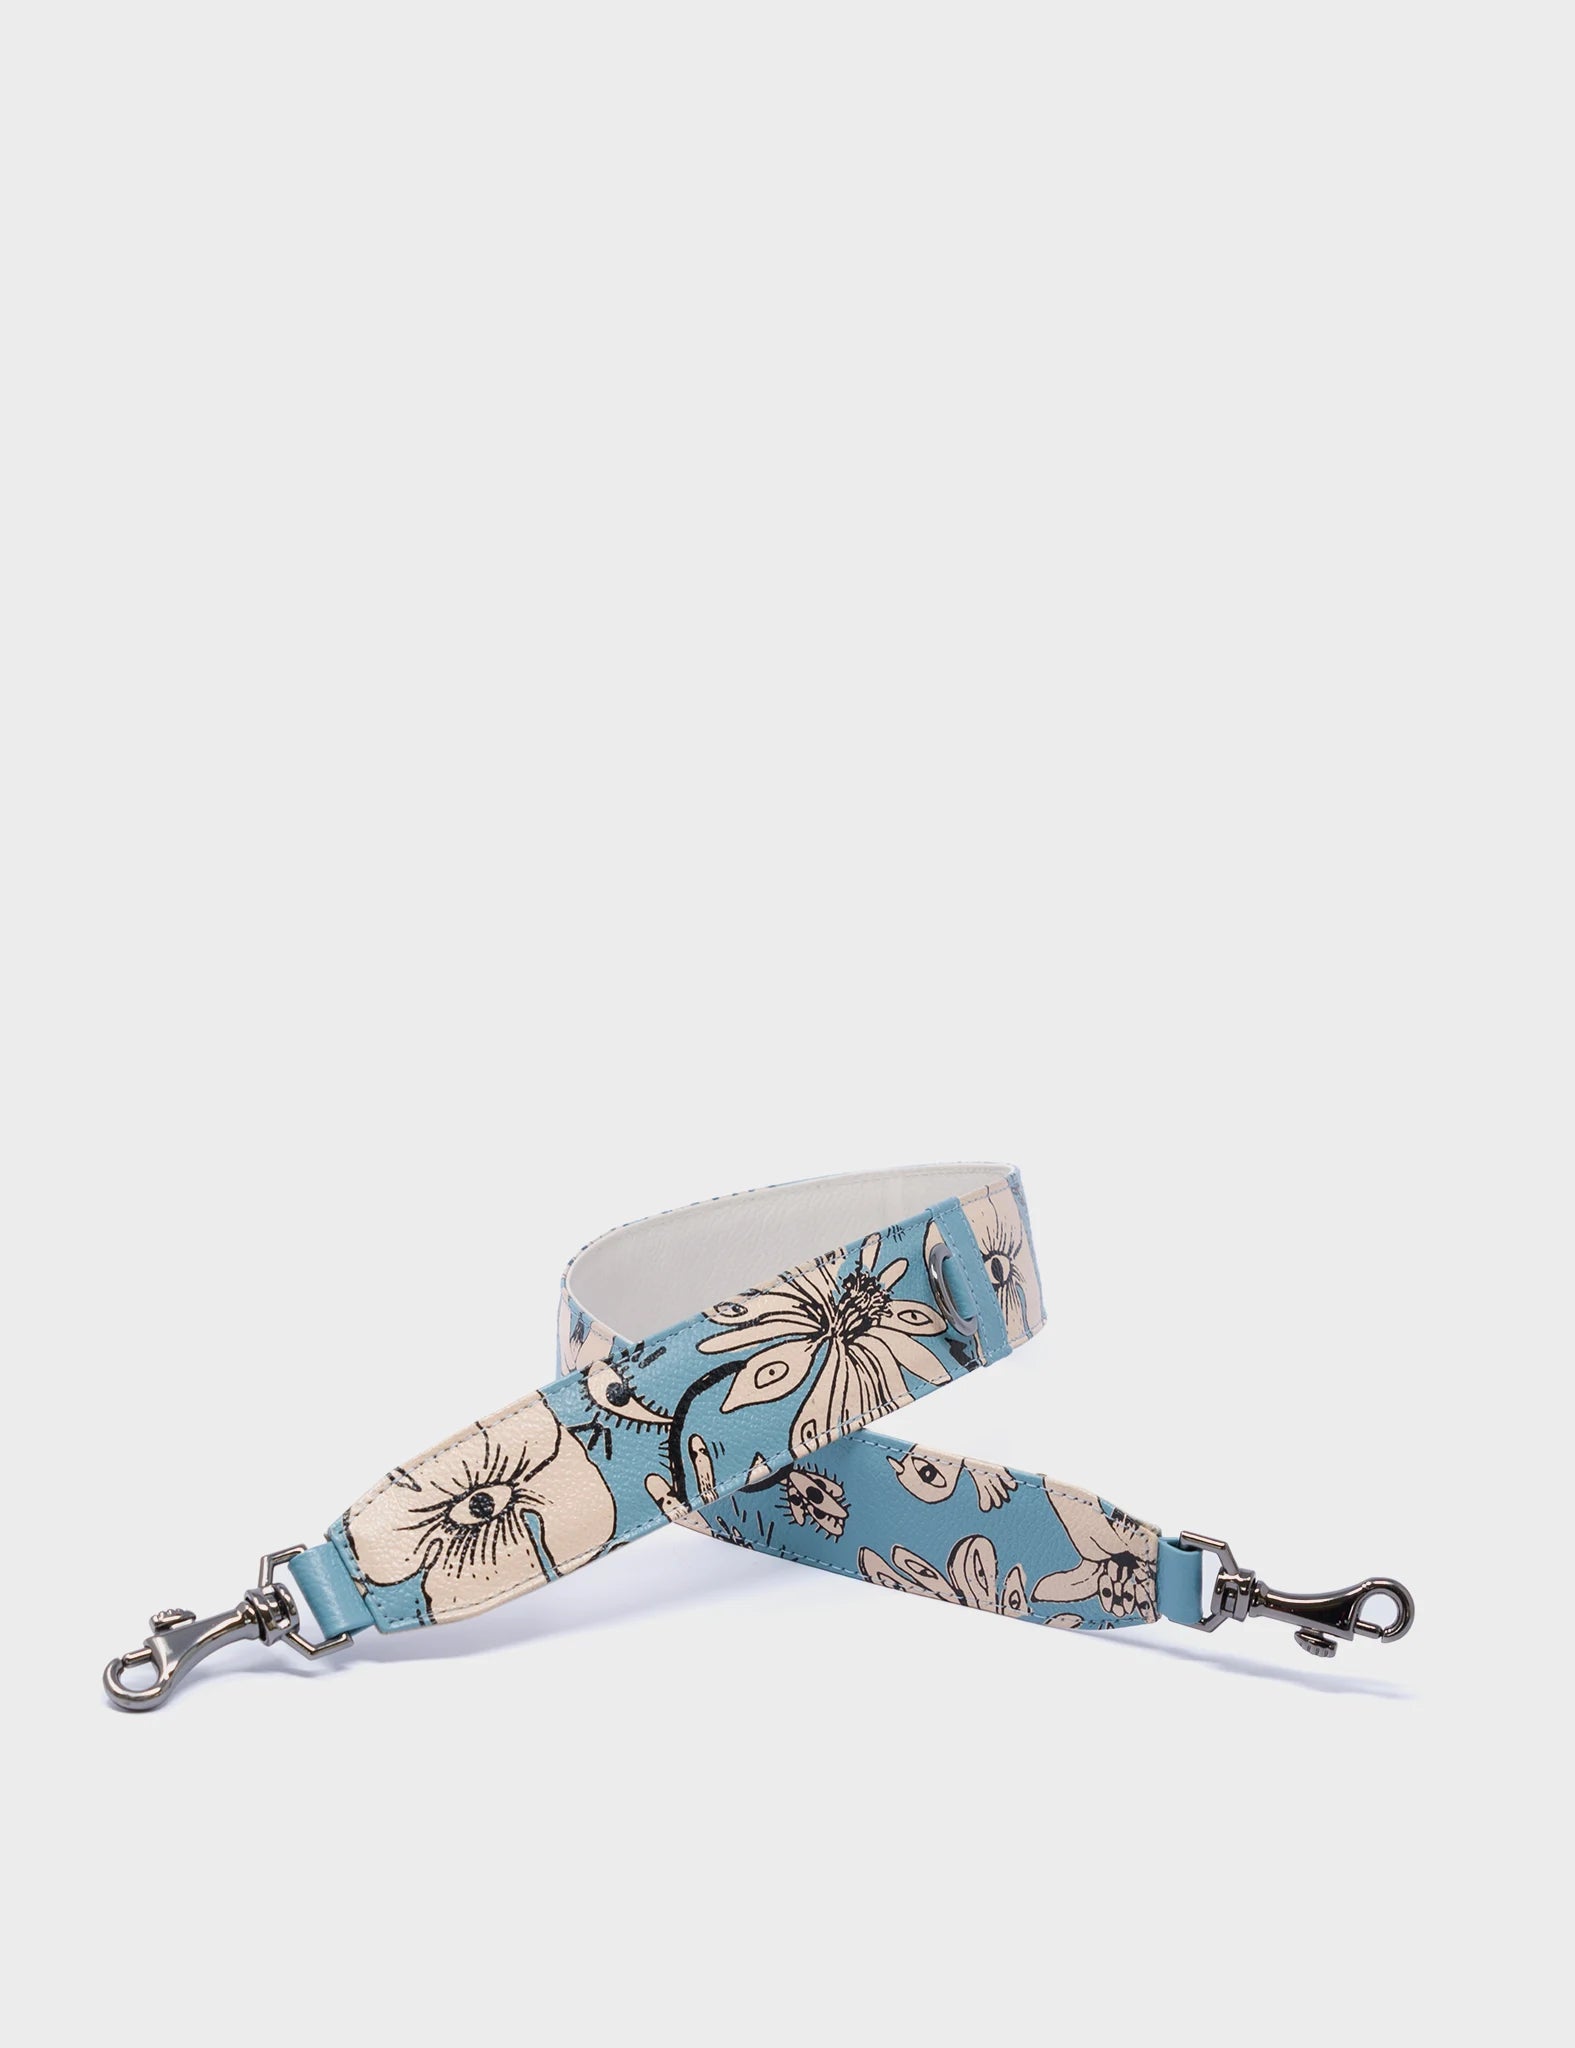 Detachable Short Cameo Blue Leather Shoulder Strap - Floral pattern - side 